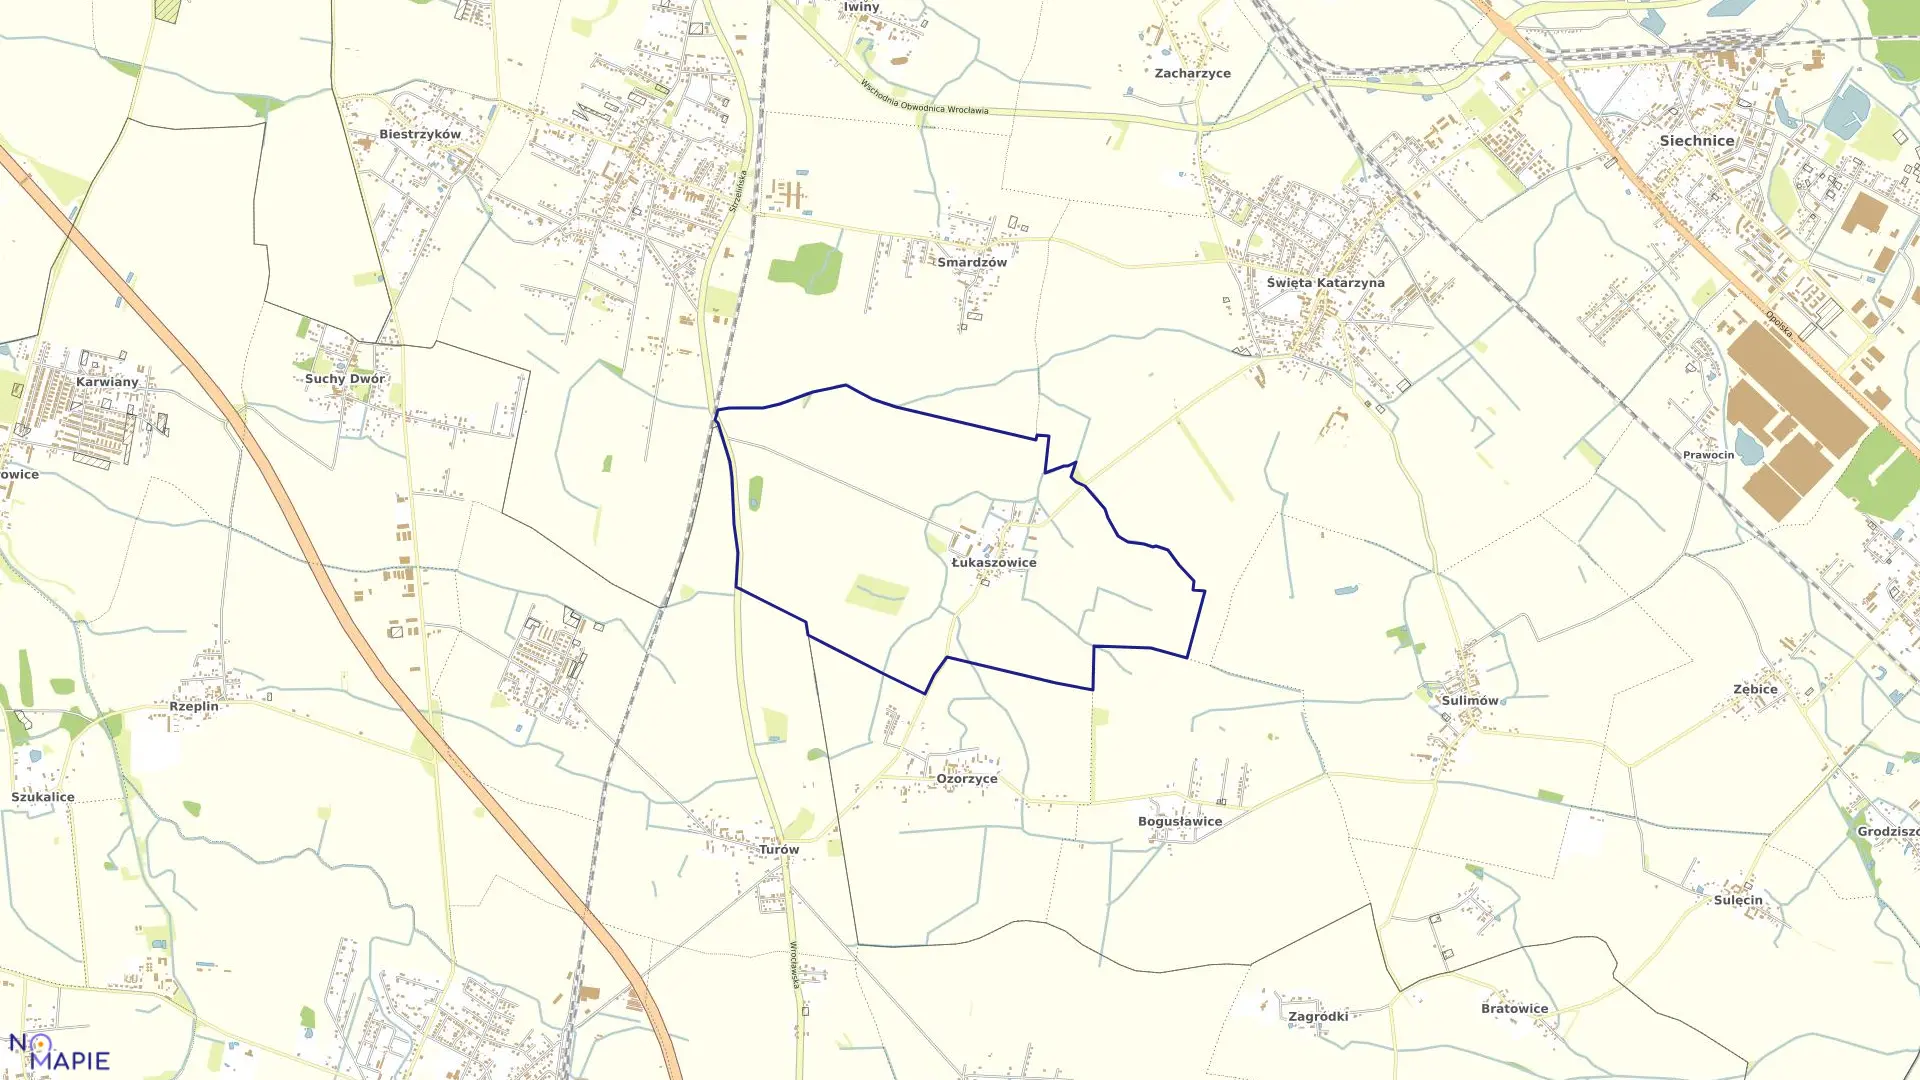 Mapa obrębu Łukaszowice w gminie Siechnice